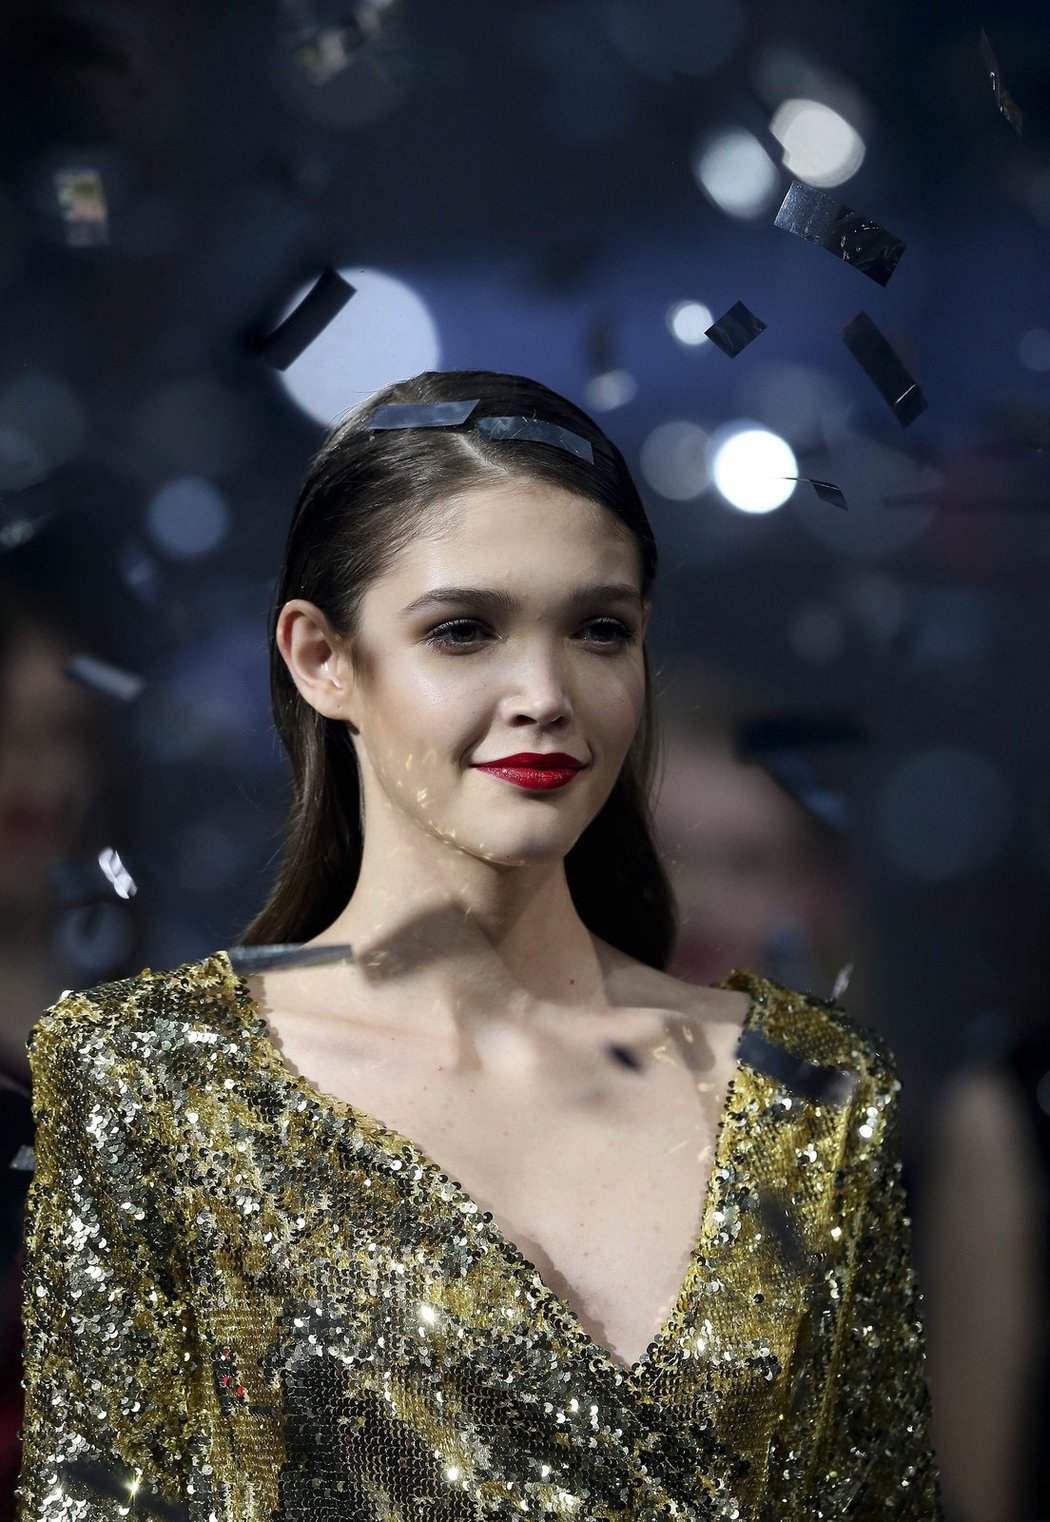 Dcera slávistického šéfa Jaroslava Tvrdíka Jana vyhrála mezinárodní modelingovou soutěž Elite Model Look.